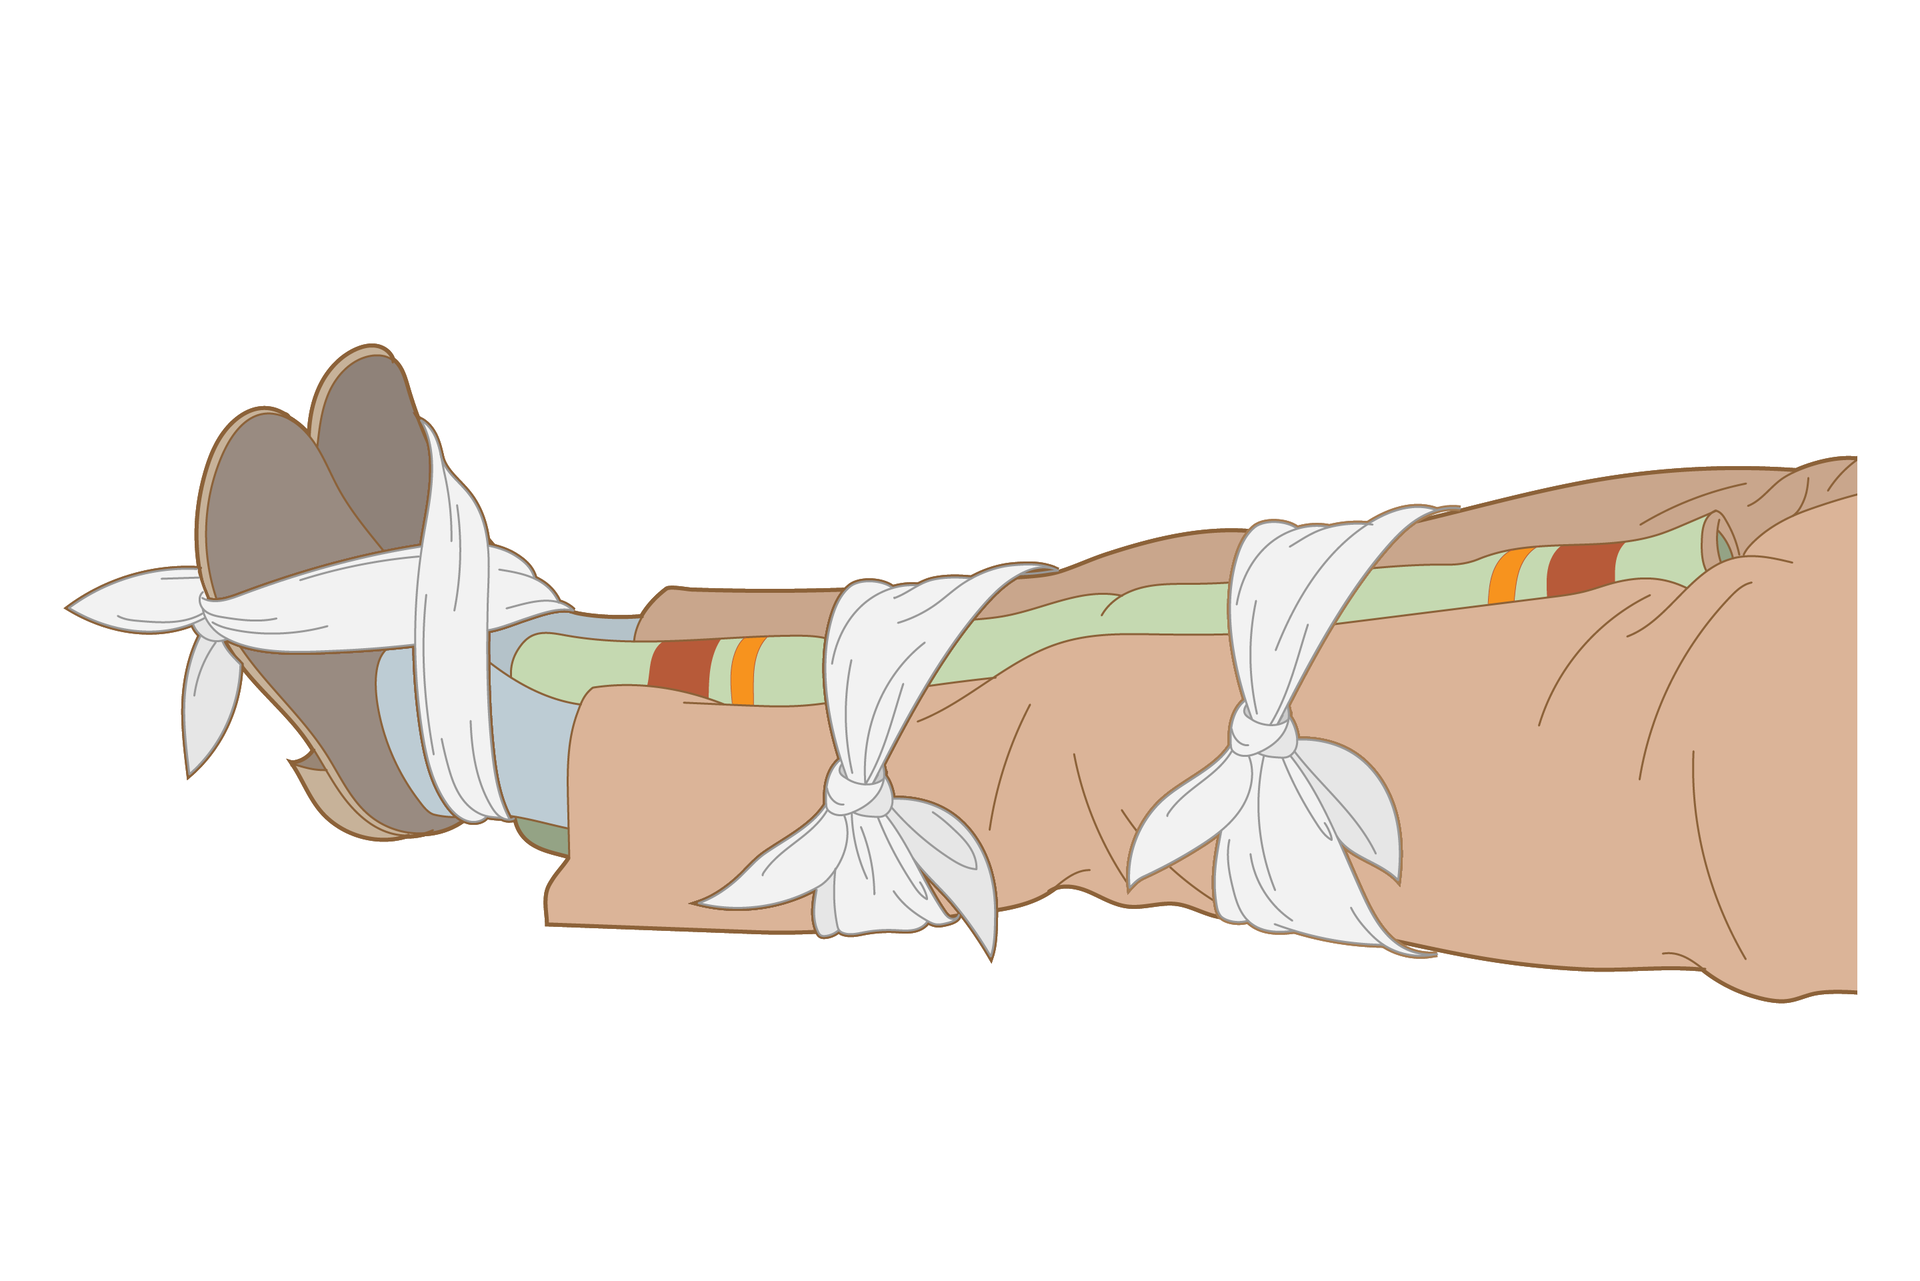 Rysunek przedstawia trzeci etap unieruchamiania nogi lub nóg u poszkodowanego za pomocą koca. Na ilustracji poziomo leżące nogi poszkodowanego od pasa w dół, skierowane stopami w lewo. Ubranie kompletne, obie nogi równolegle do siebie. Pomiędzy nogami od stóp do krocza włożony zwinięty koc. Stopy, łydki oraz uda tuż powyżej kolan obwiązane chustami w celu pełnego unieruchomienia kończyn. Chusta wiążąca stopy przeciągnięta na krzyż przez kostki i śródstopie, zawiązana na podeszwach stóp.